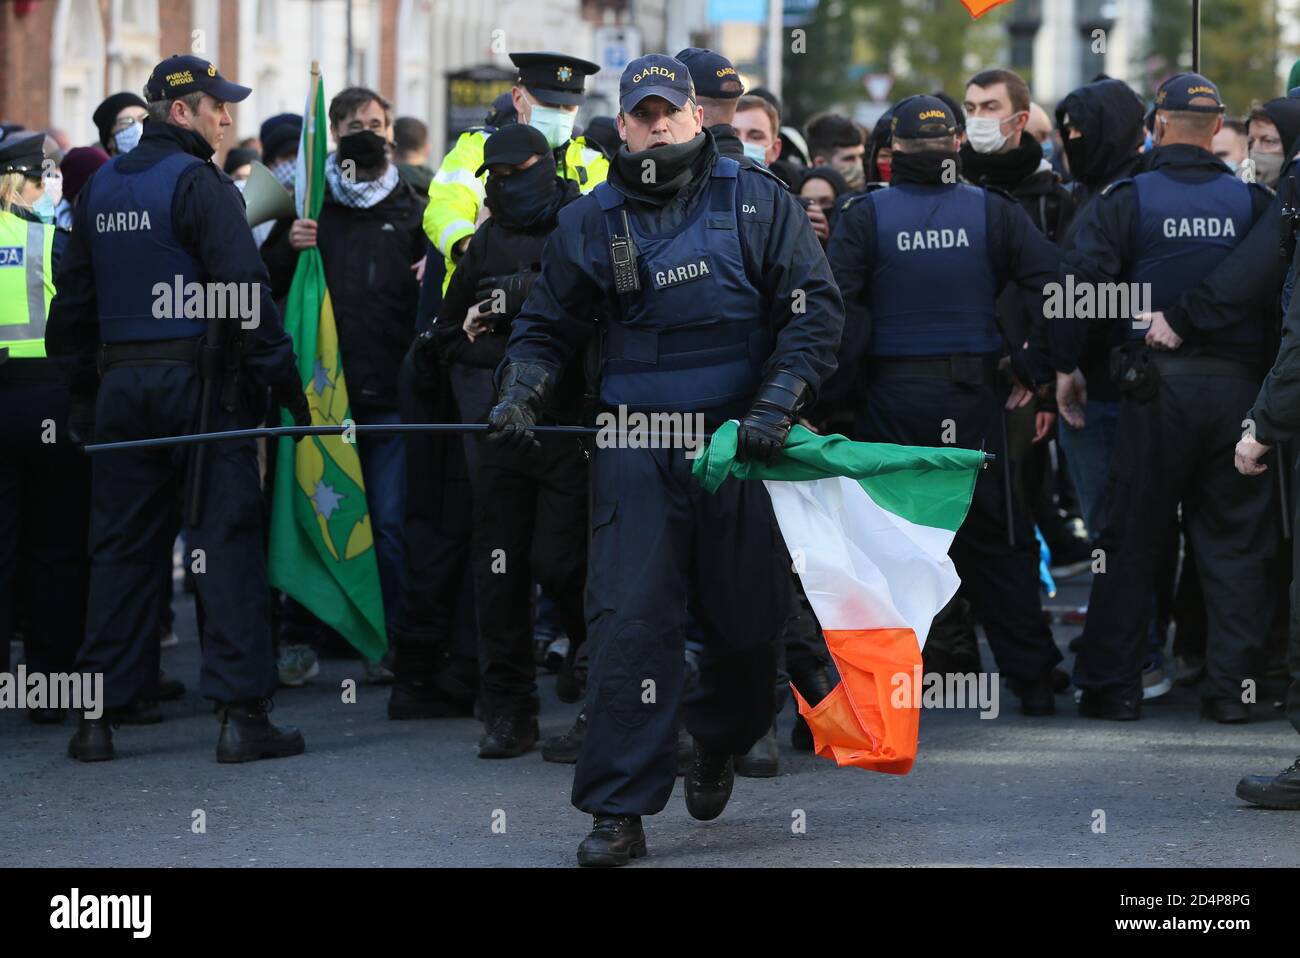 Ein Mitglied der Garda Public Order Unit entfernt während eines Anti-Lockdown-Protests vor dem Leinster House in Dublin eine irische Trikolore von den Gegendemonstrierenden, da Irland weiterhin landesweit an einer Stufe-3-Coronavirus-Sperre versperrt ist. Stockfoto